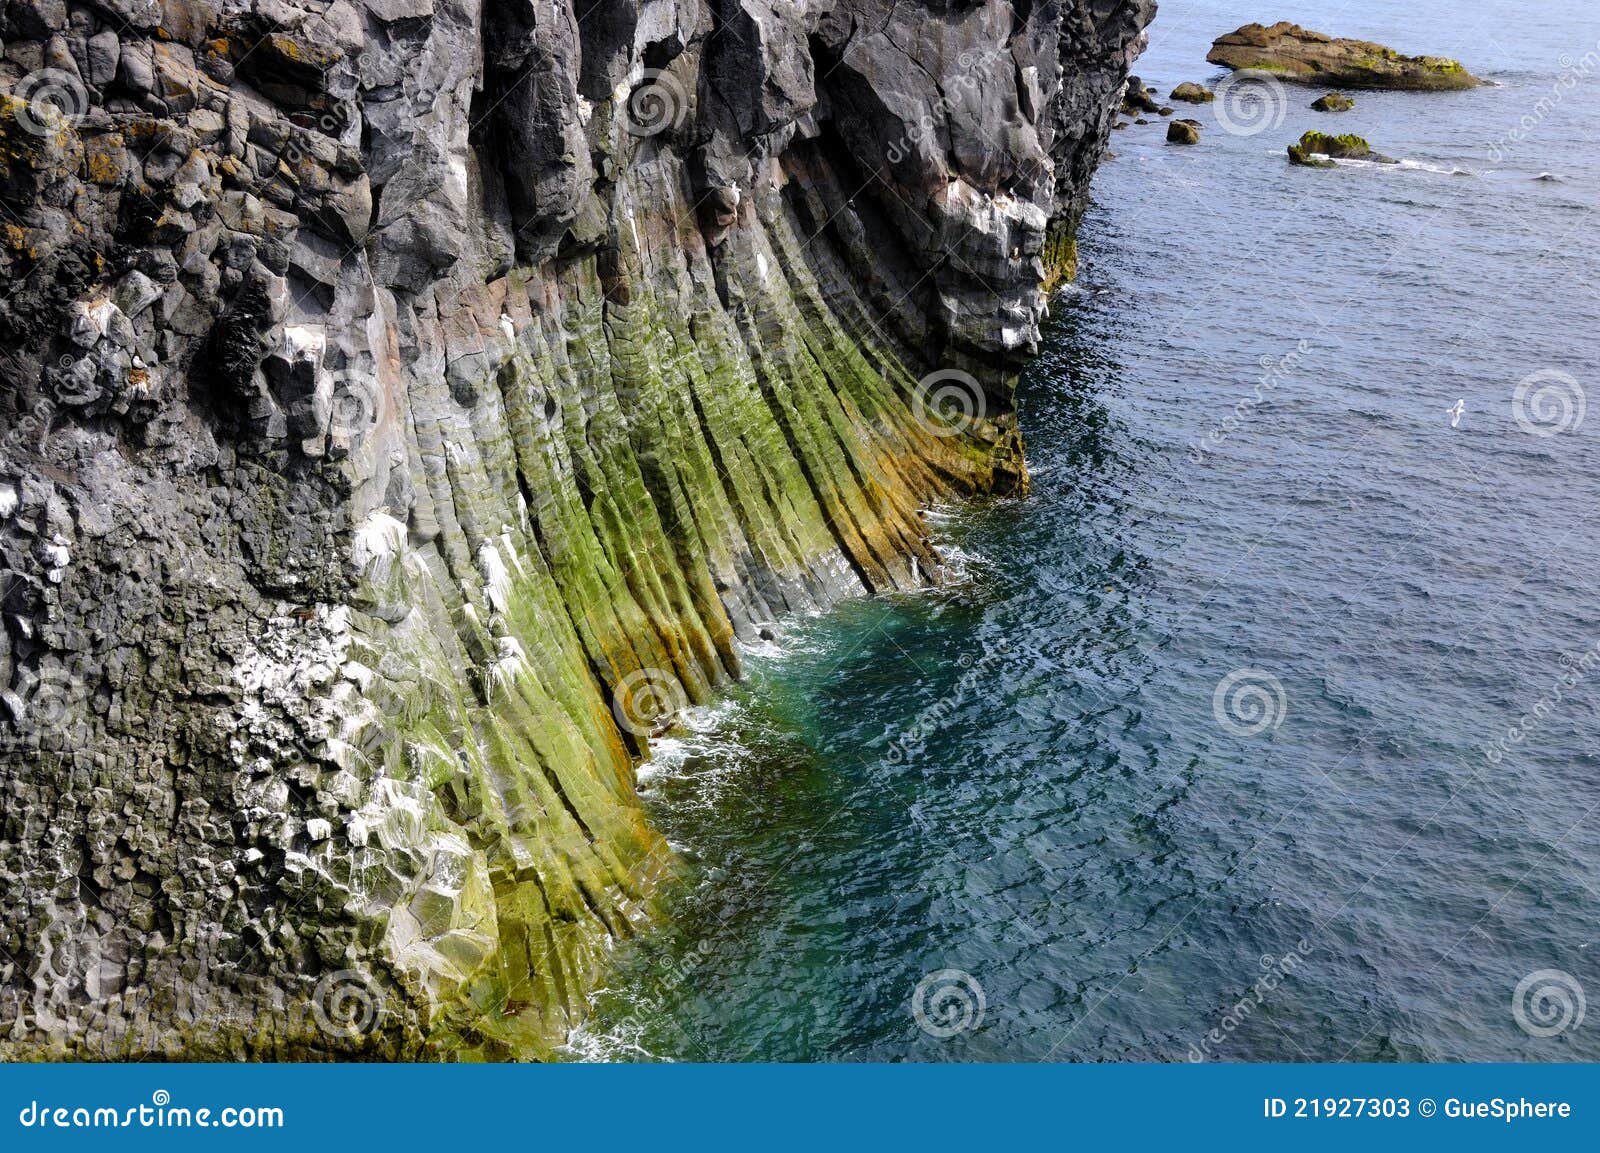 coastline, basalt pillars